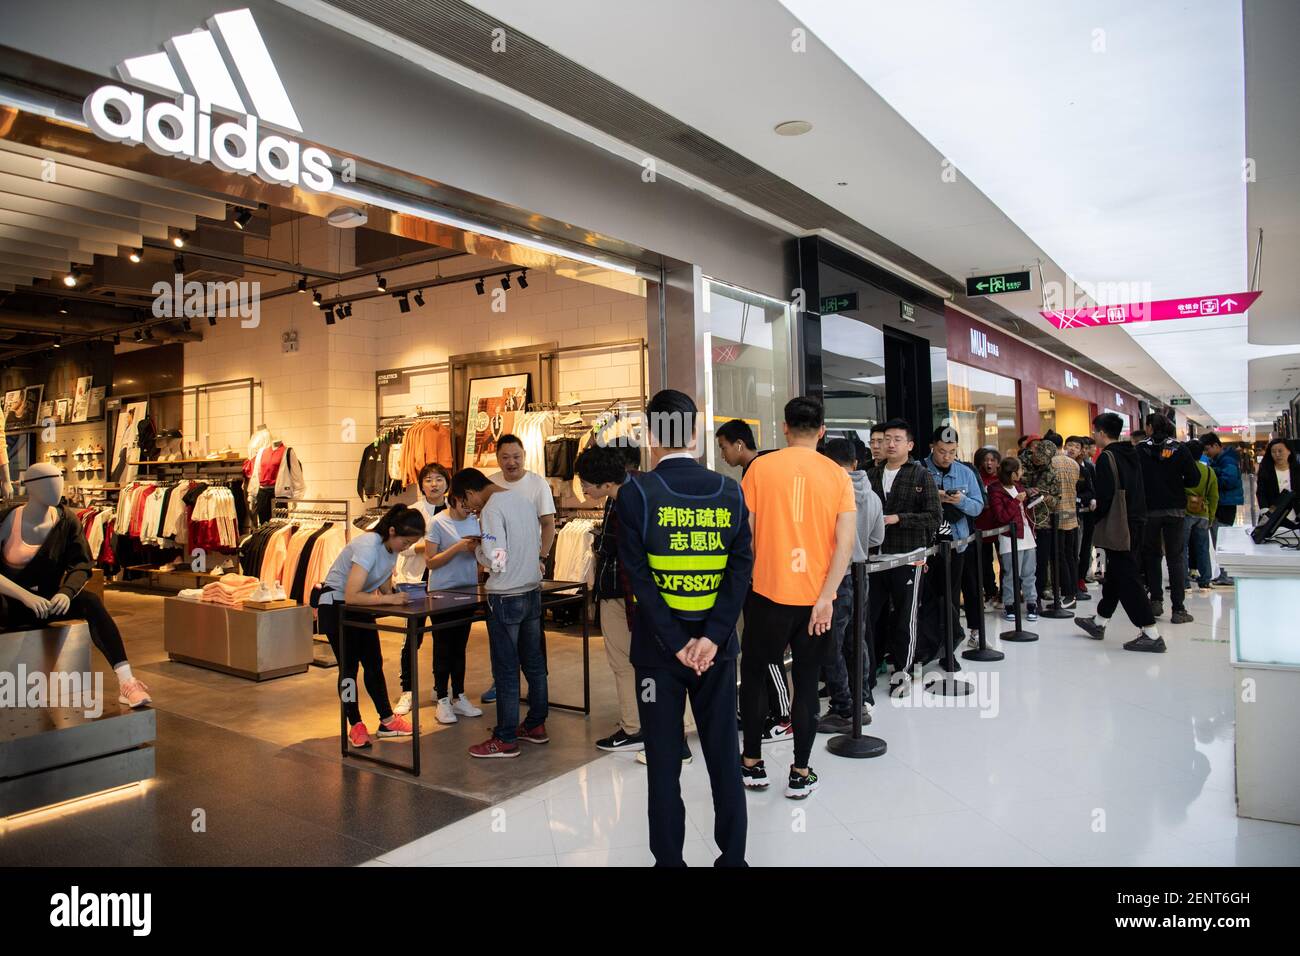 Los consumidores se alinean el recién lanzado Adidas Yeezy, una colaboración entre la Marca alemana de ropa deportiva Adidas y el rapero estadounidense Kanye en una tienda Adidas en